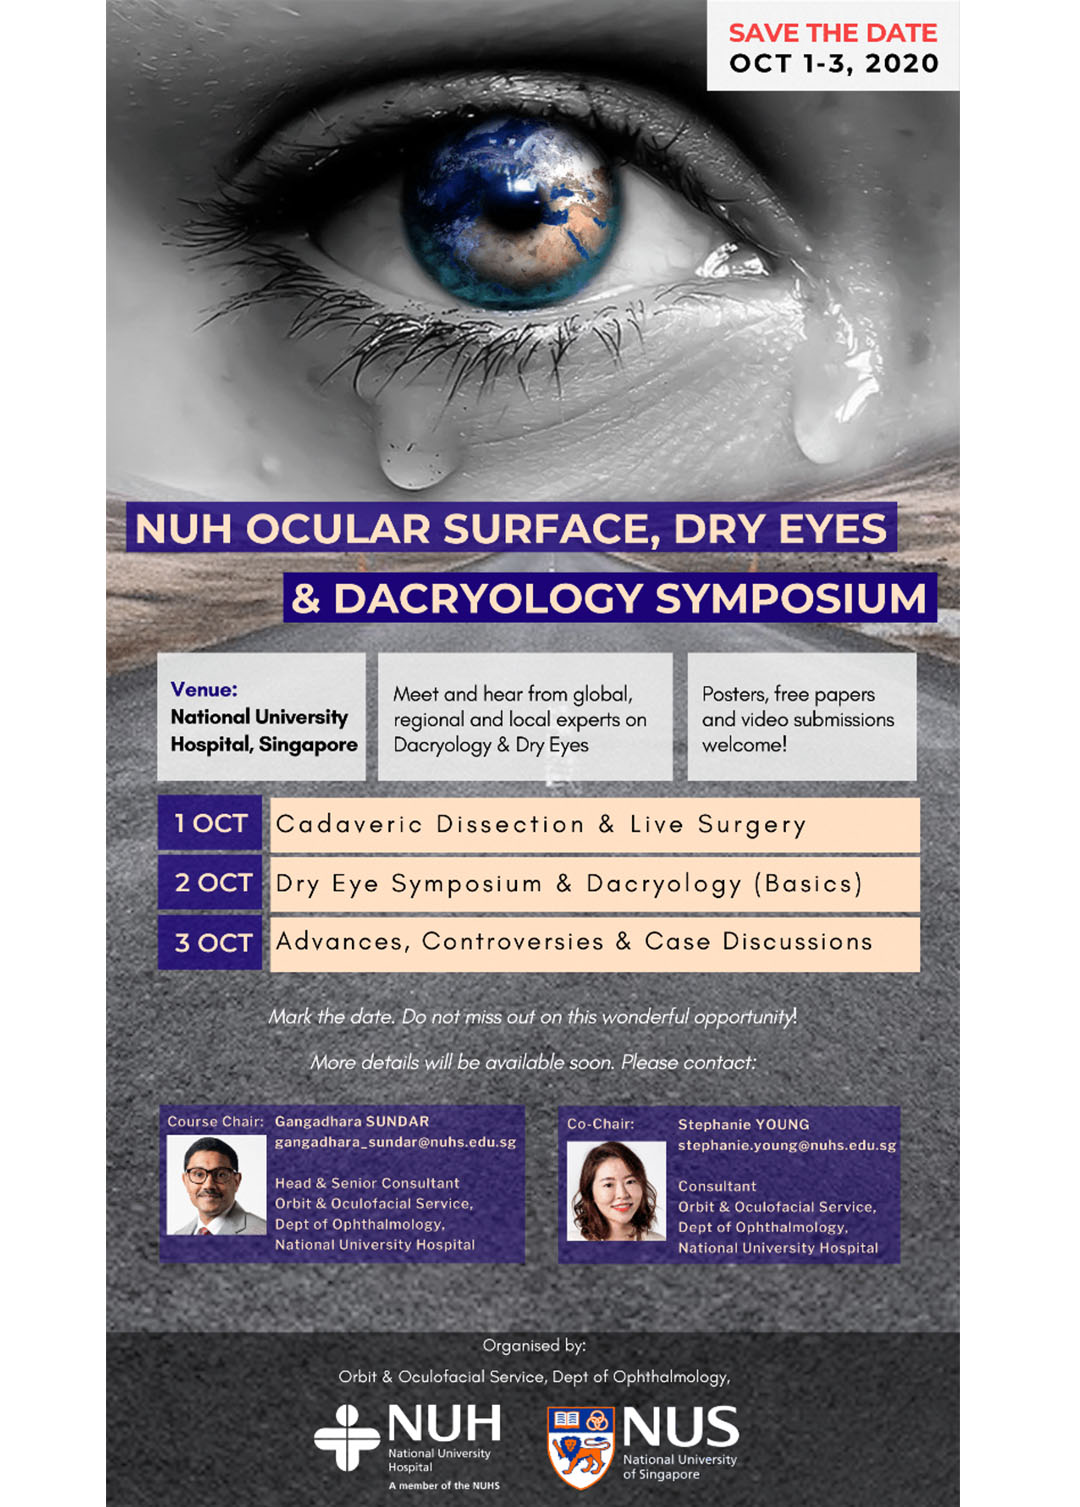 NUH Ocular Surface, Dry Eyes & Dacryology Symposium